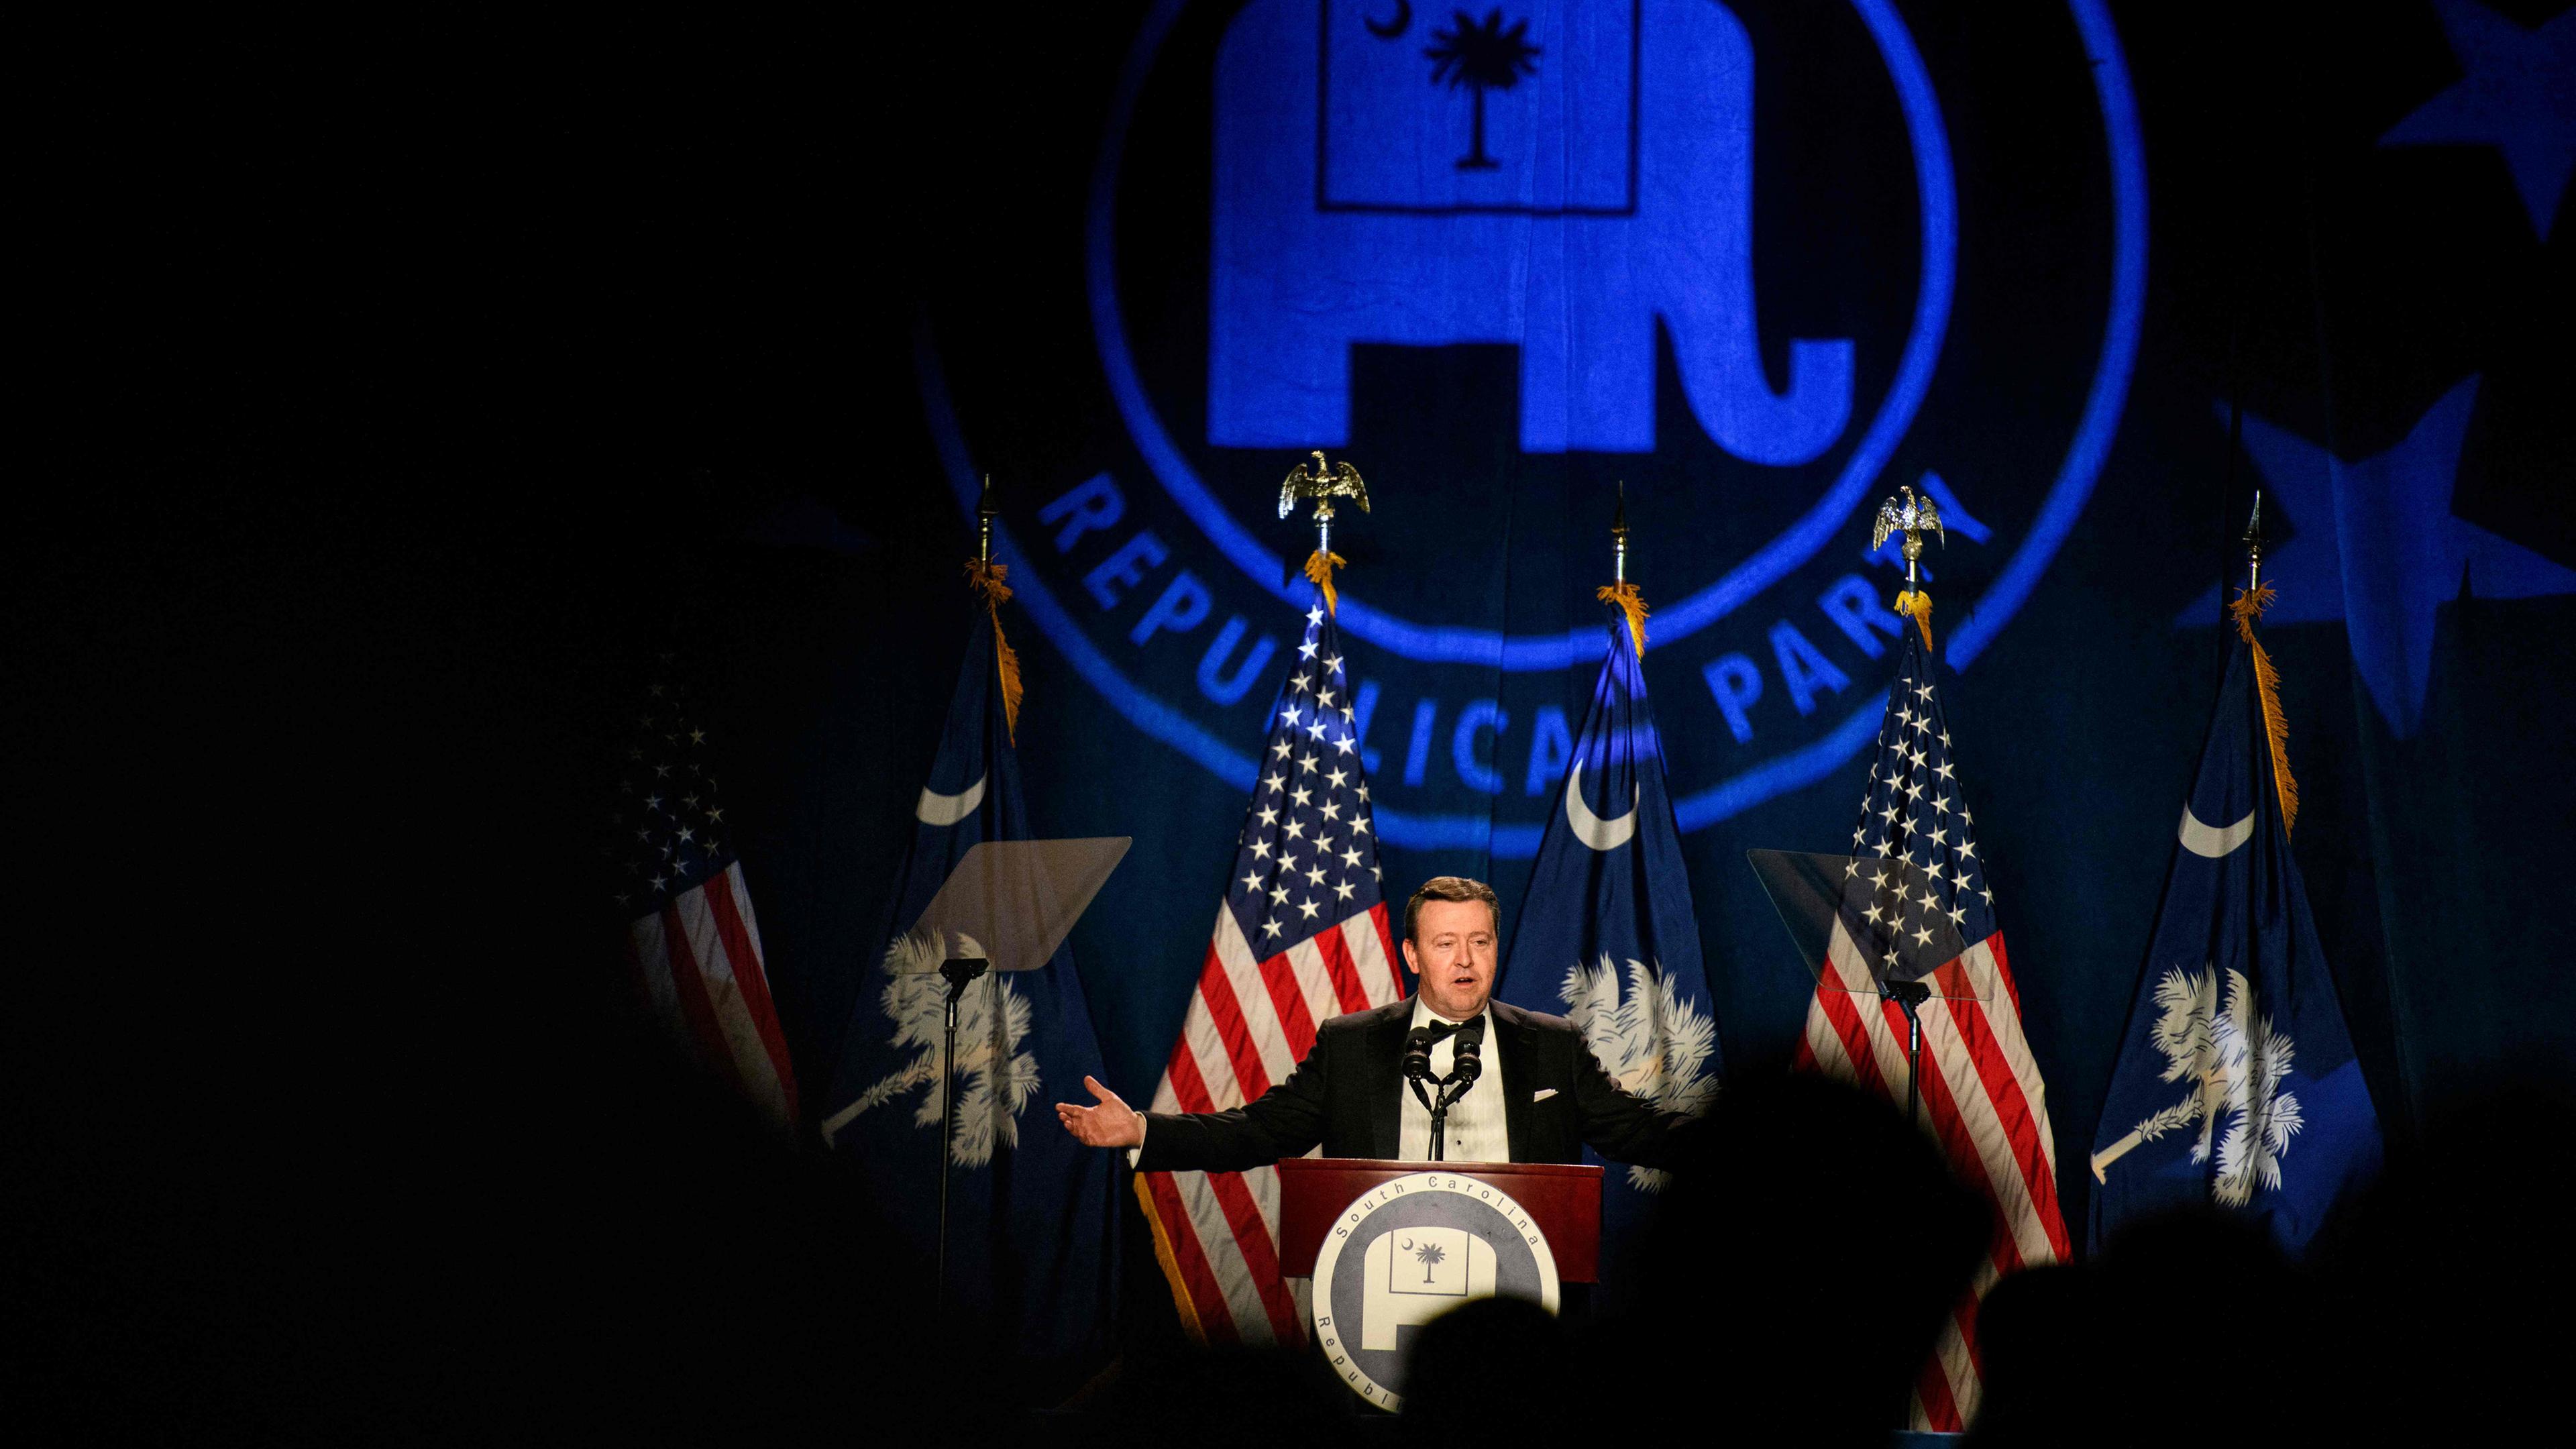 Ein Mann steht auf einer Bühne und spricht an einem Pult, vor ihm sind amerikanische Flaggen und im Hintergrund wird das Symbol der republikanischen Partei (der Elefant) angestrahlt.